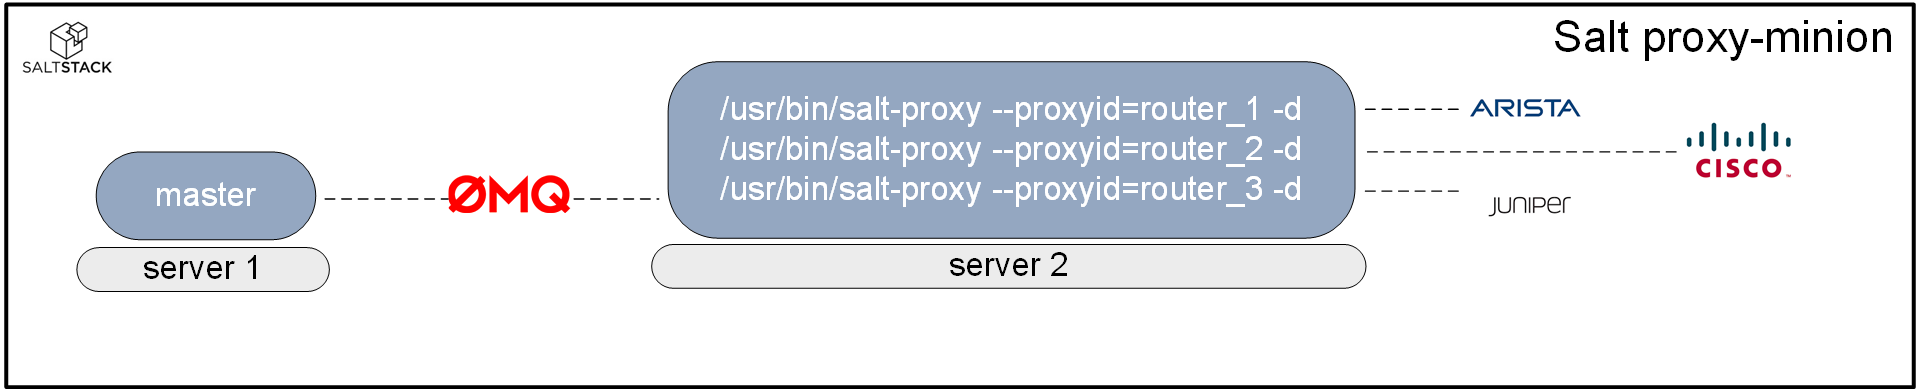 SaltStack proxy-minion